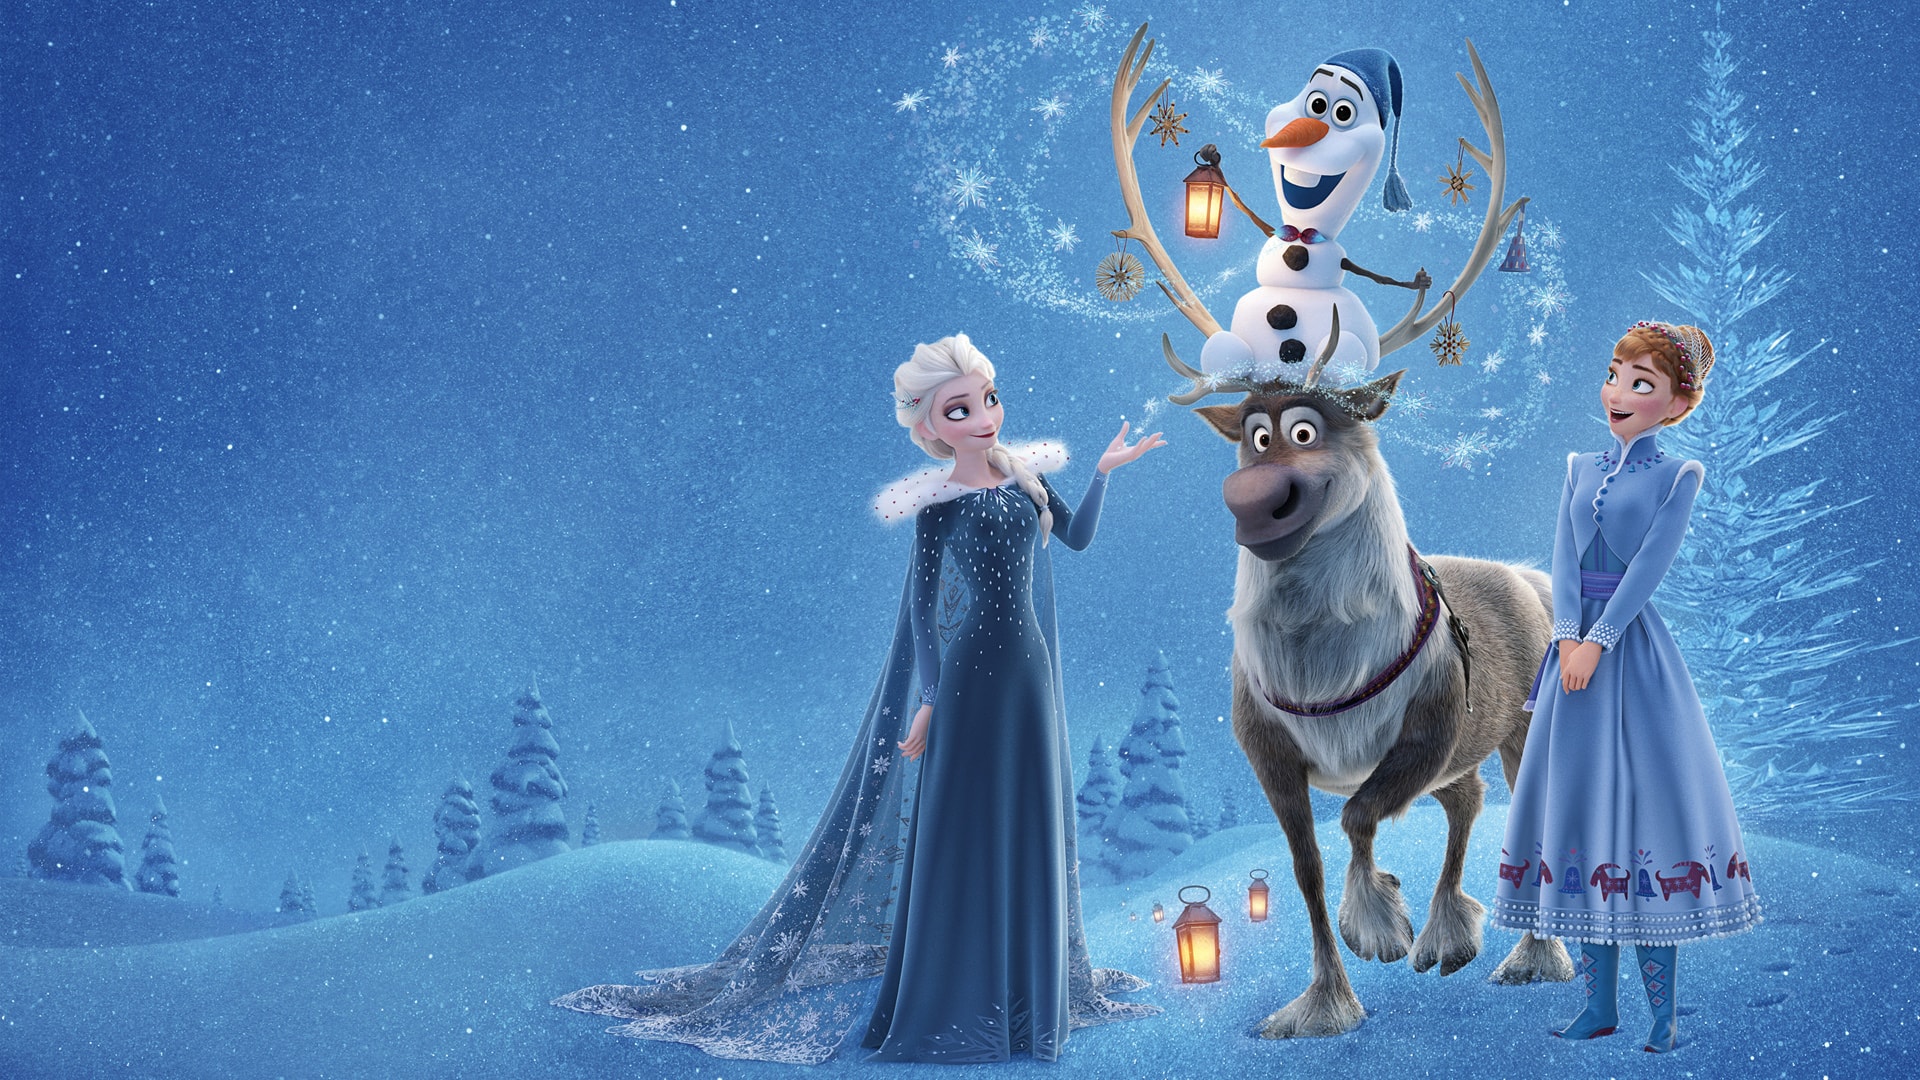 冰雪奇缘Frozen 艾莎安娜与雪宝